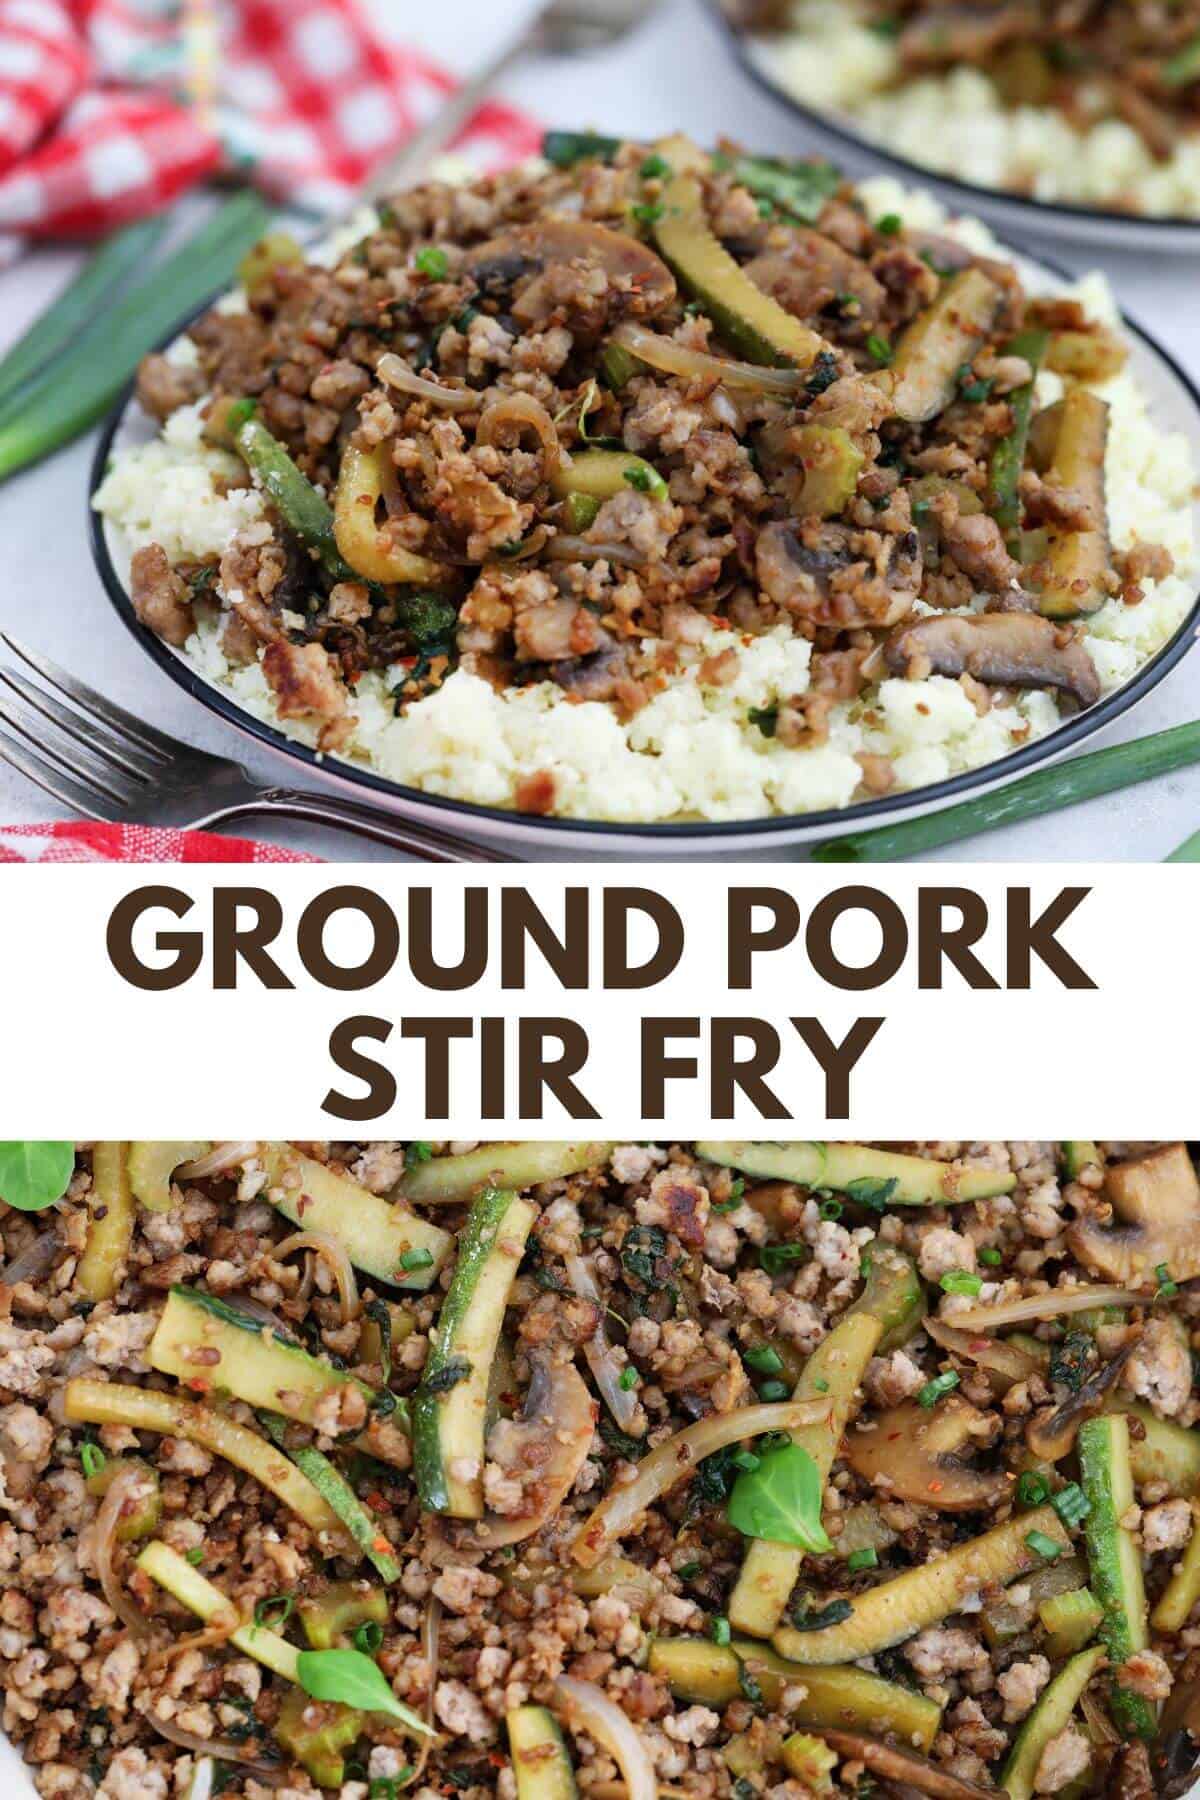 Ground pork stir fry on a plate.